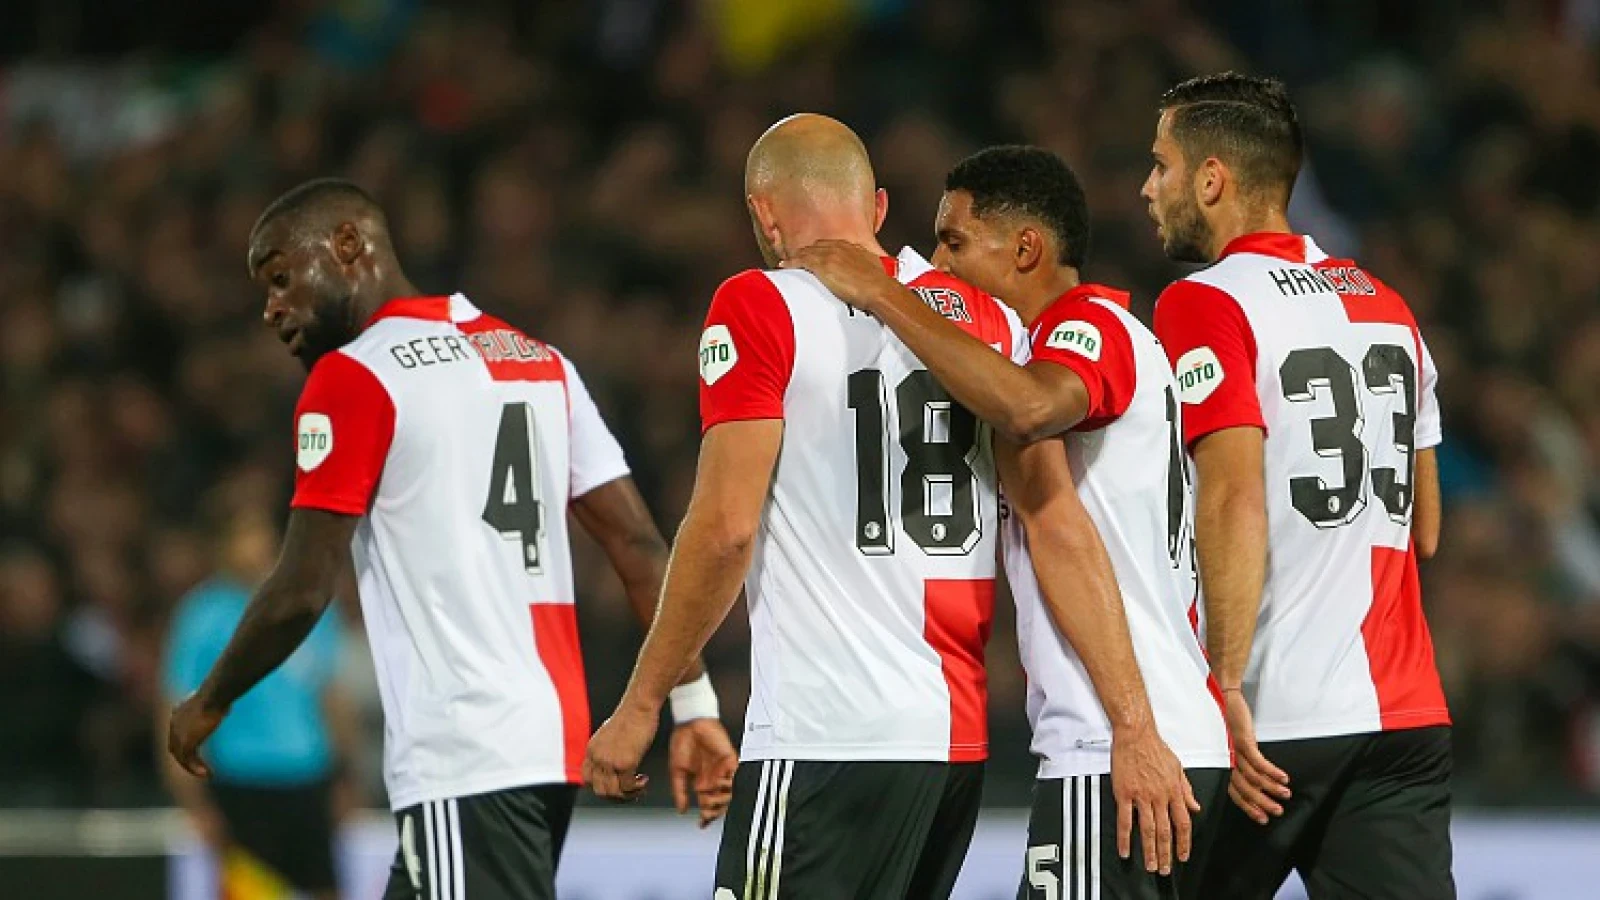 Driessen stelt doel voor Feyenoord: 'Dat moet het streven zijn'